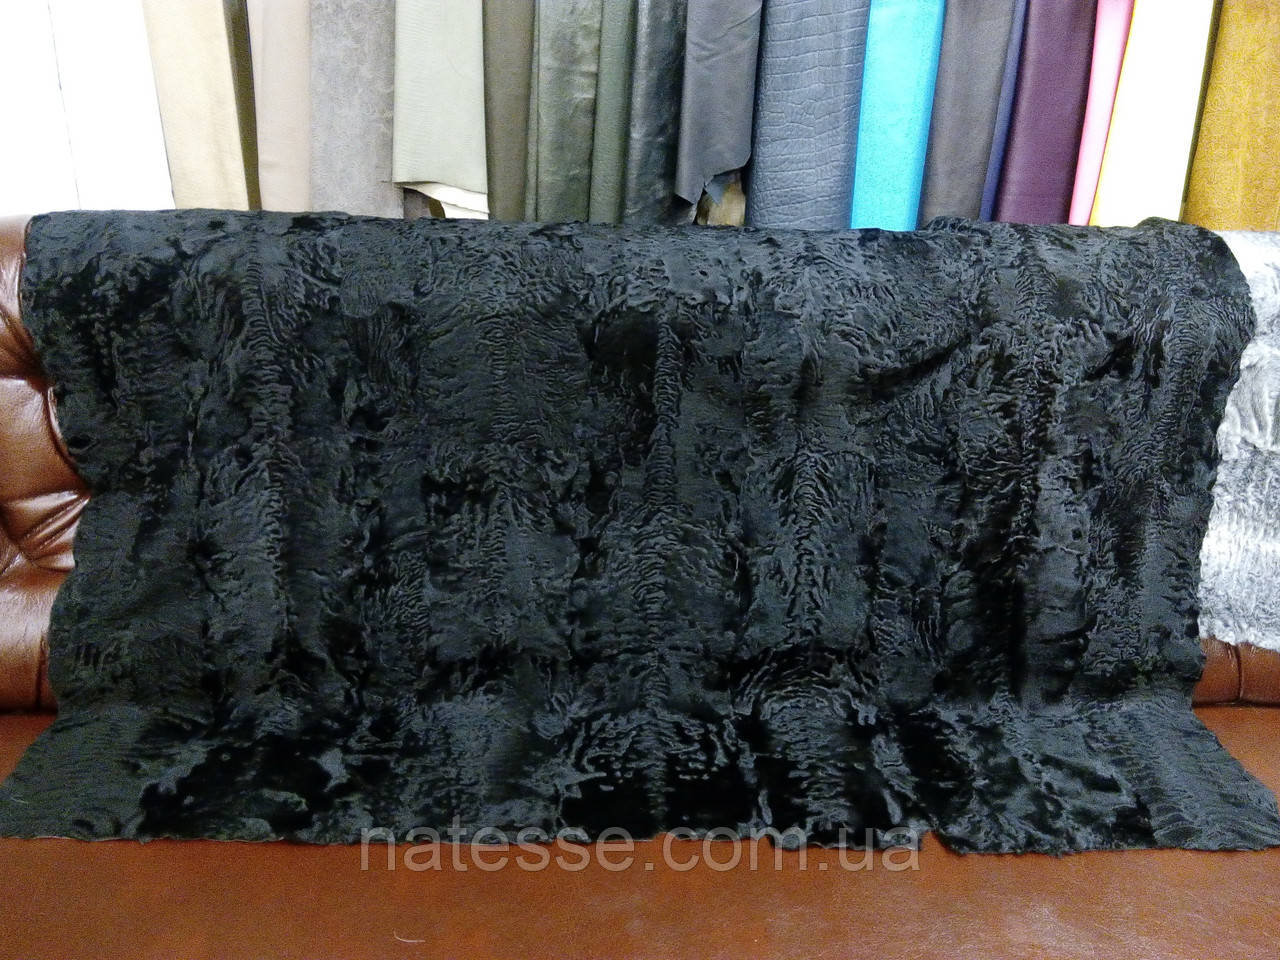 Пластина каракульчі чорного кольору, розмір 100*155 см